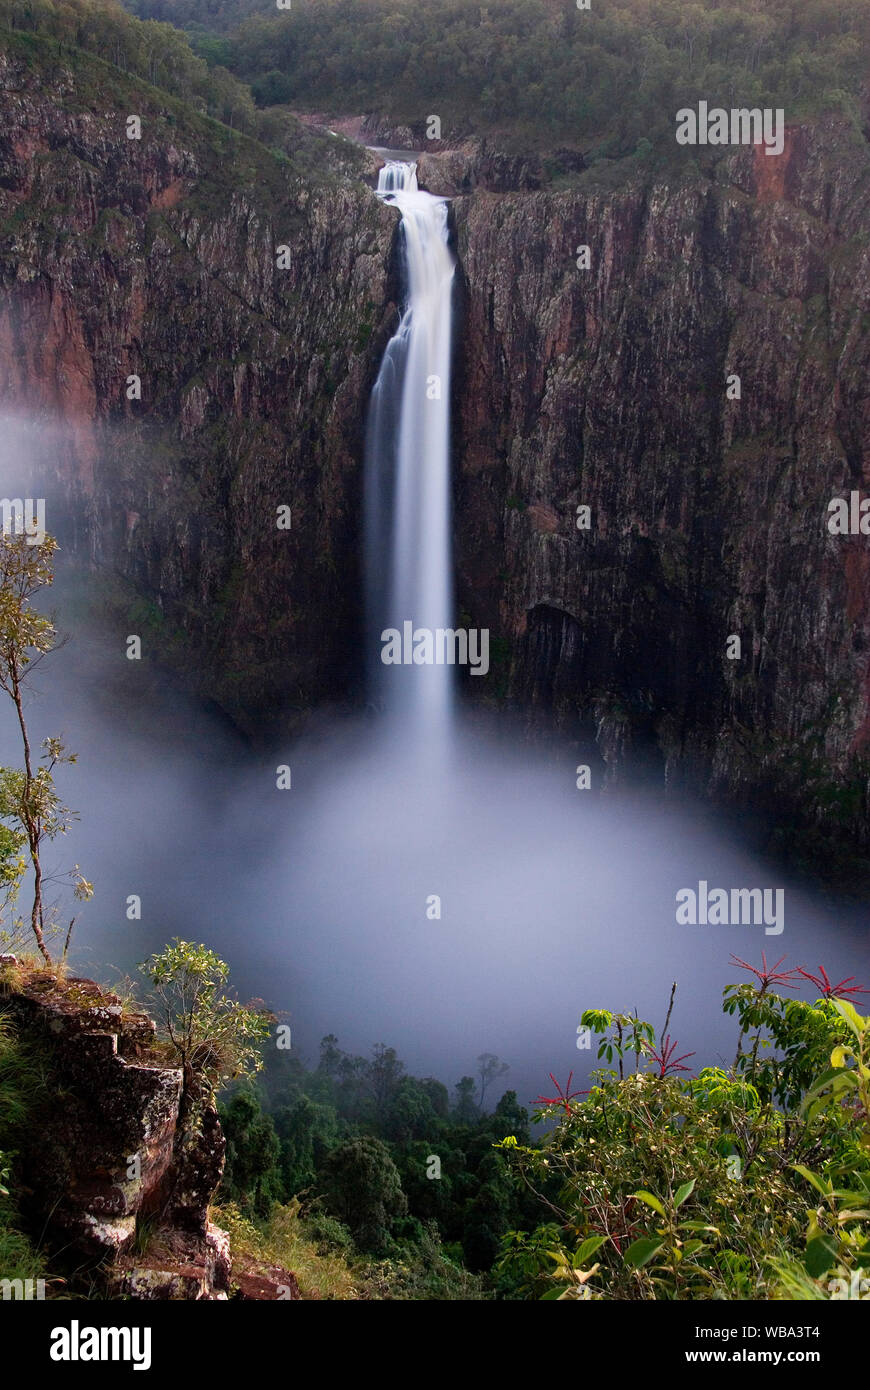 Wallaman Falls (340 m), Australiens größte permanente Wasserfall. Lumholtz Abschnitt, Girringun National Park, Queensland, Australien Stockfoto